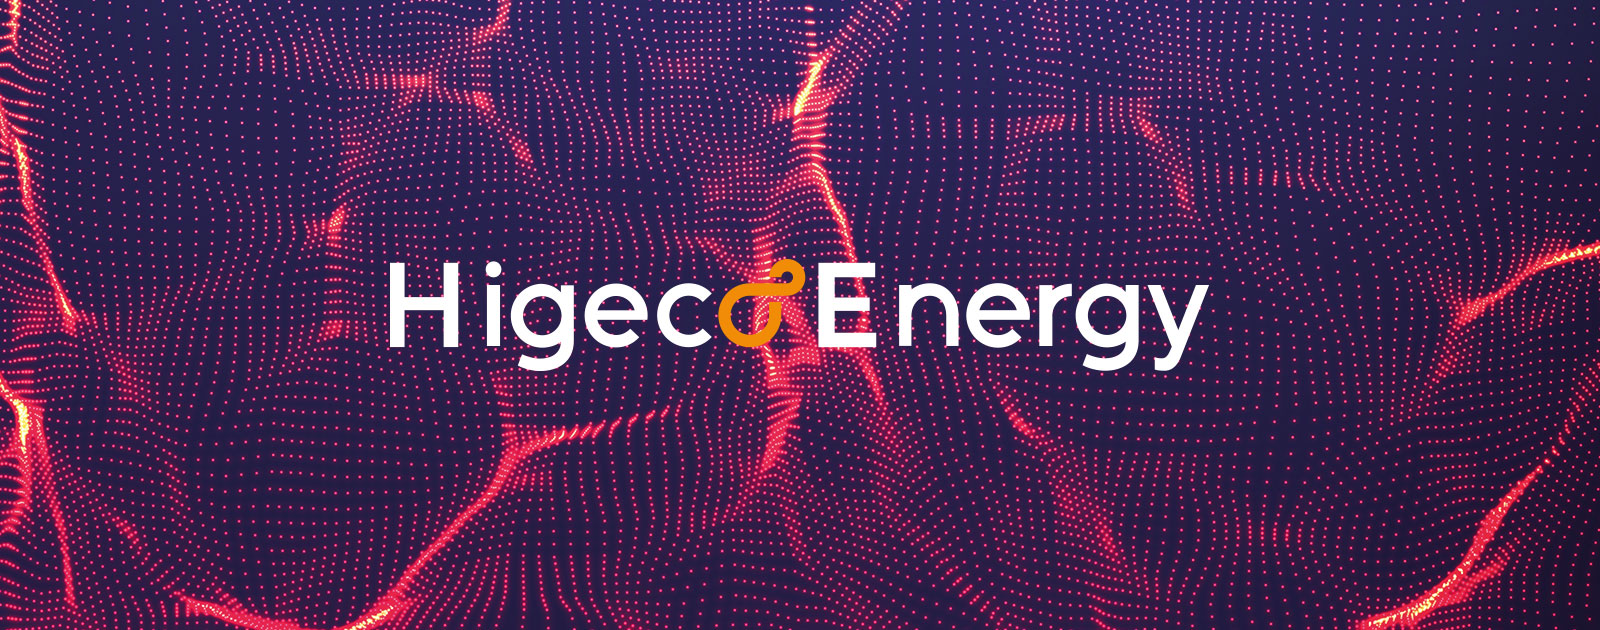 Higeco Energy